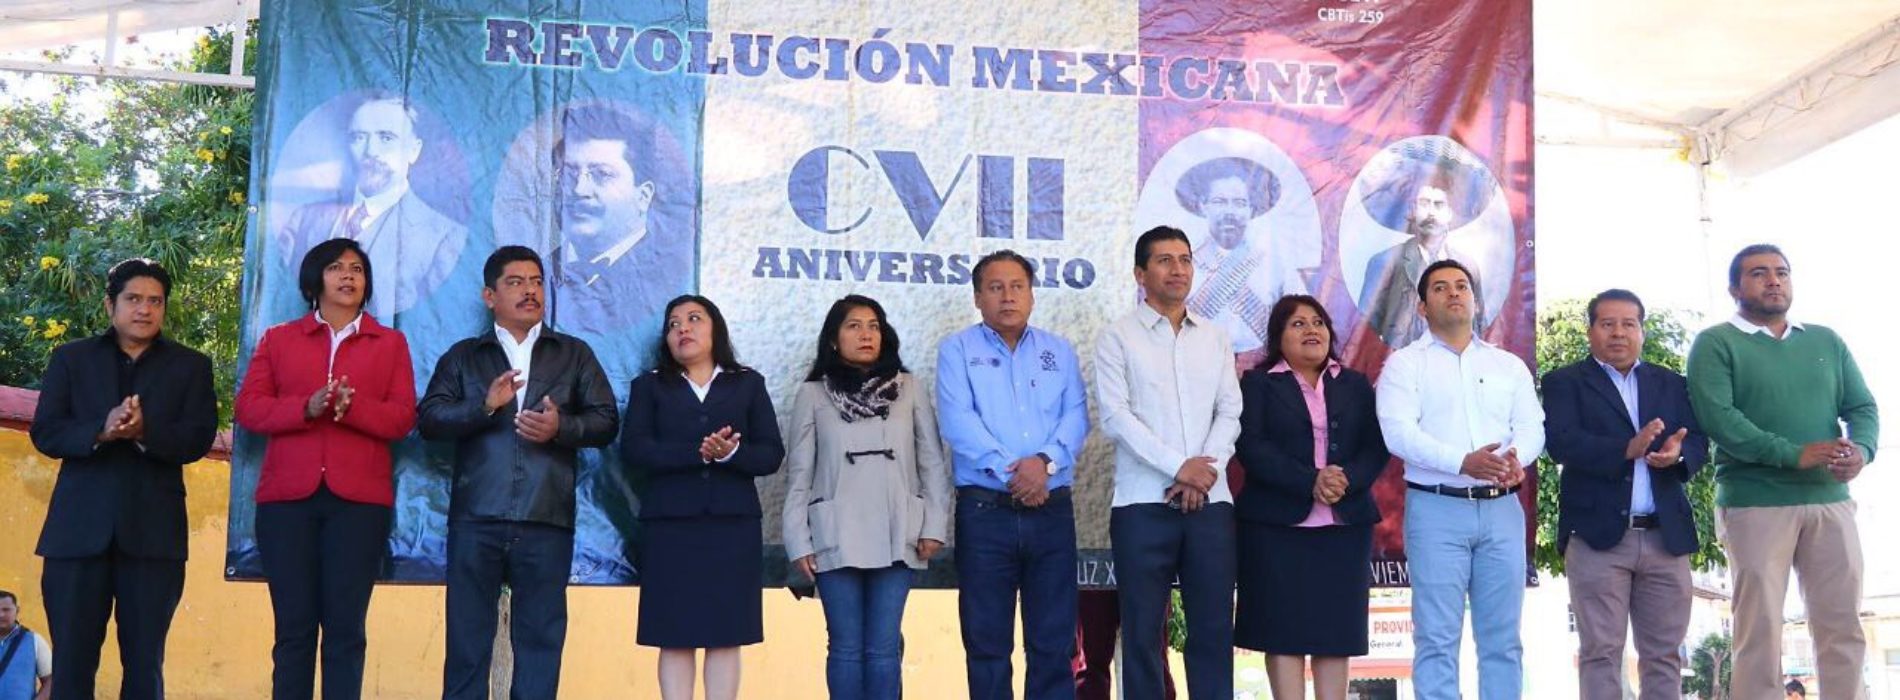 Gobierno de Xoxocotlán conmemora 107 aniversario de la Revolución Mexicana